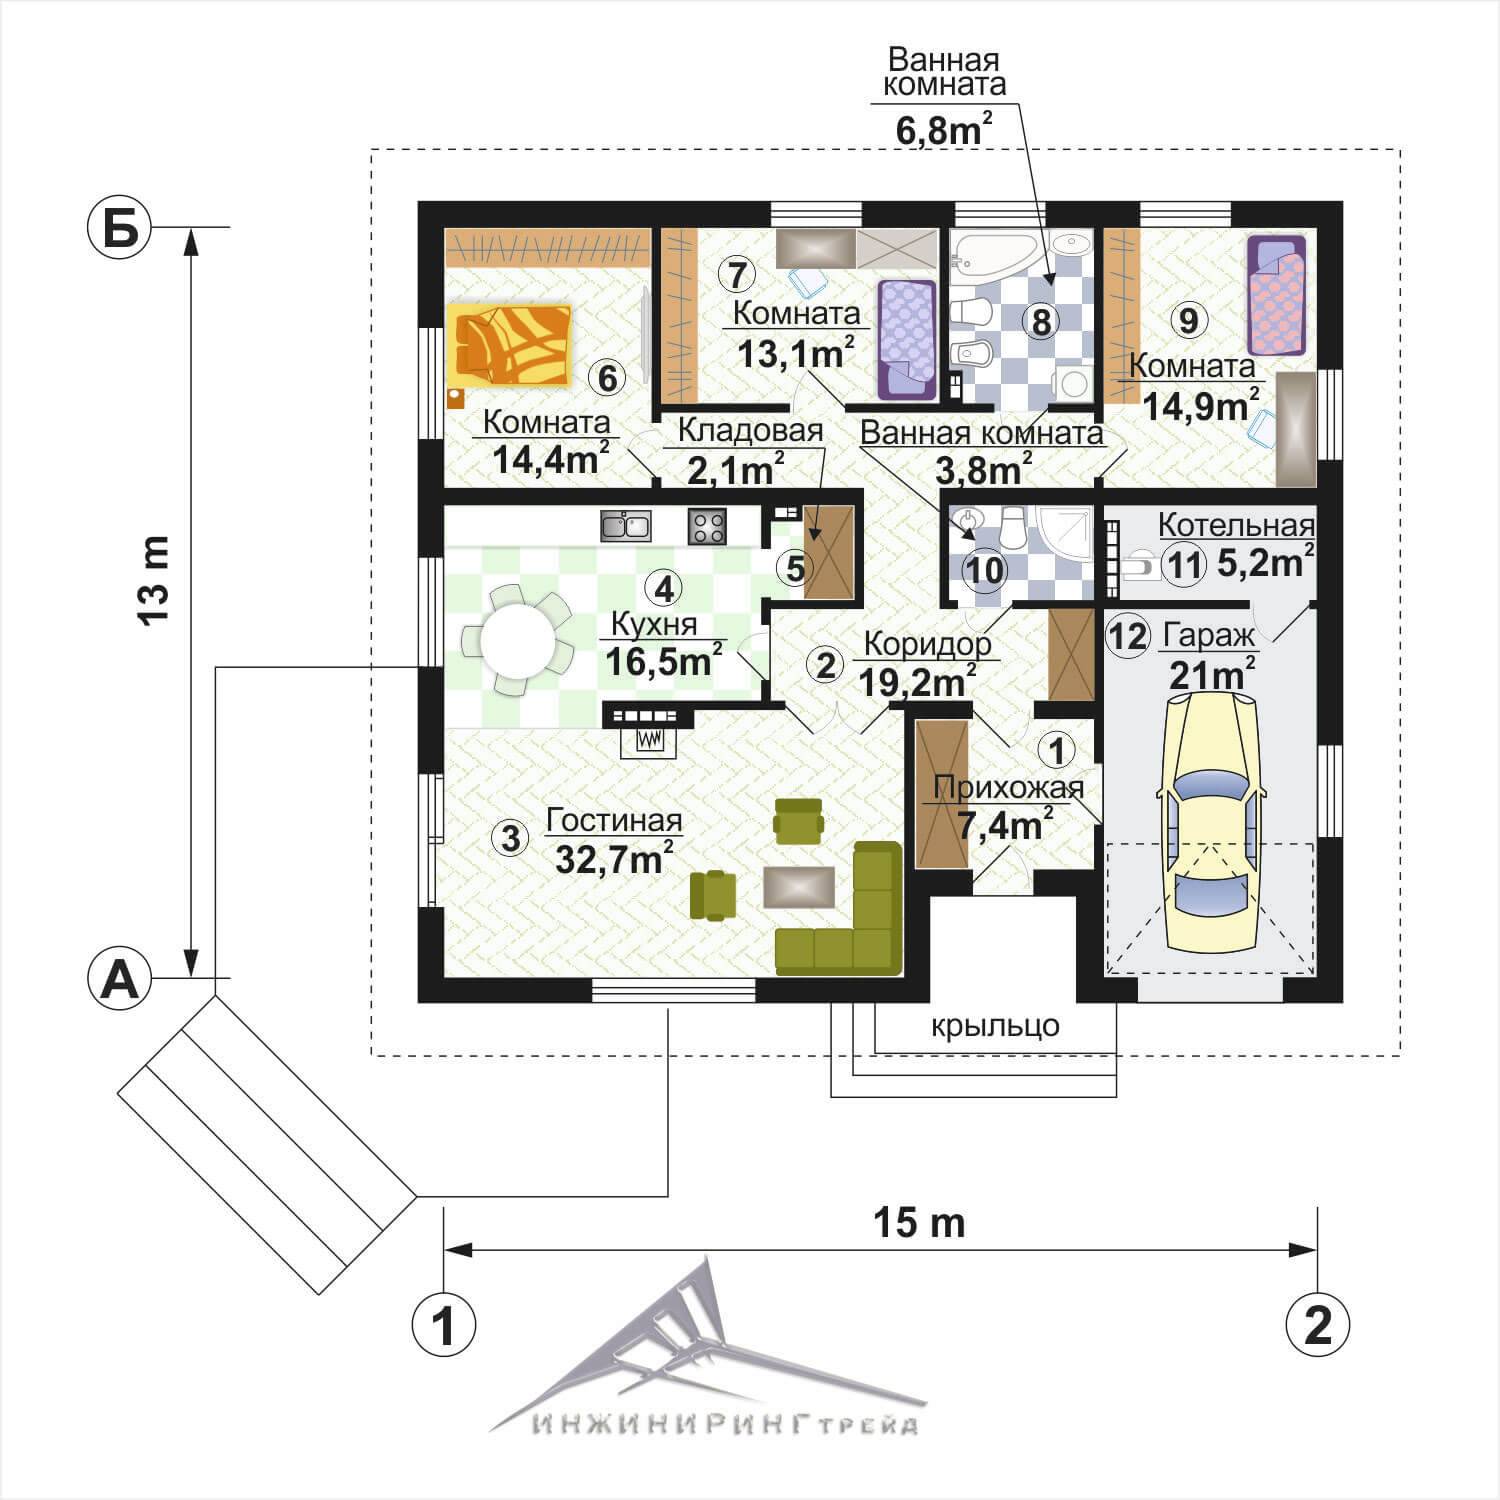 Правила создания оптимального пространства при проектировании дома с тремя спальнями